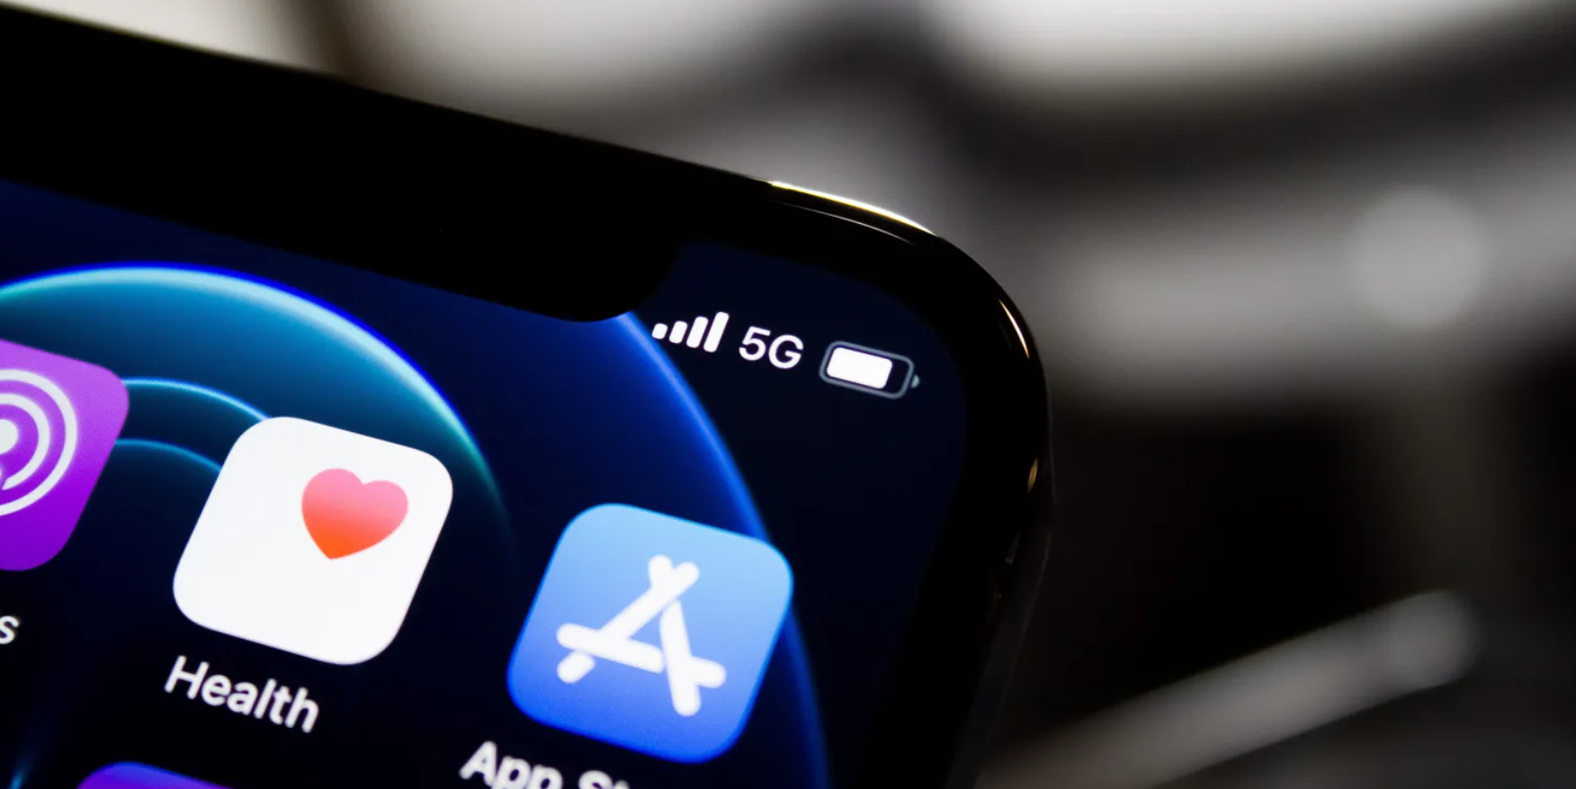 Tốc độ kết nối 5G trên chiếc iPhone nào nhanh nhất?